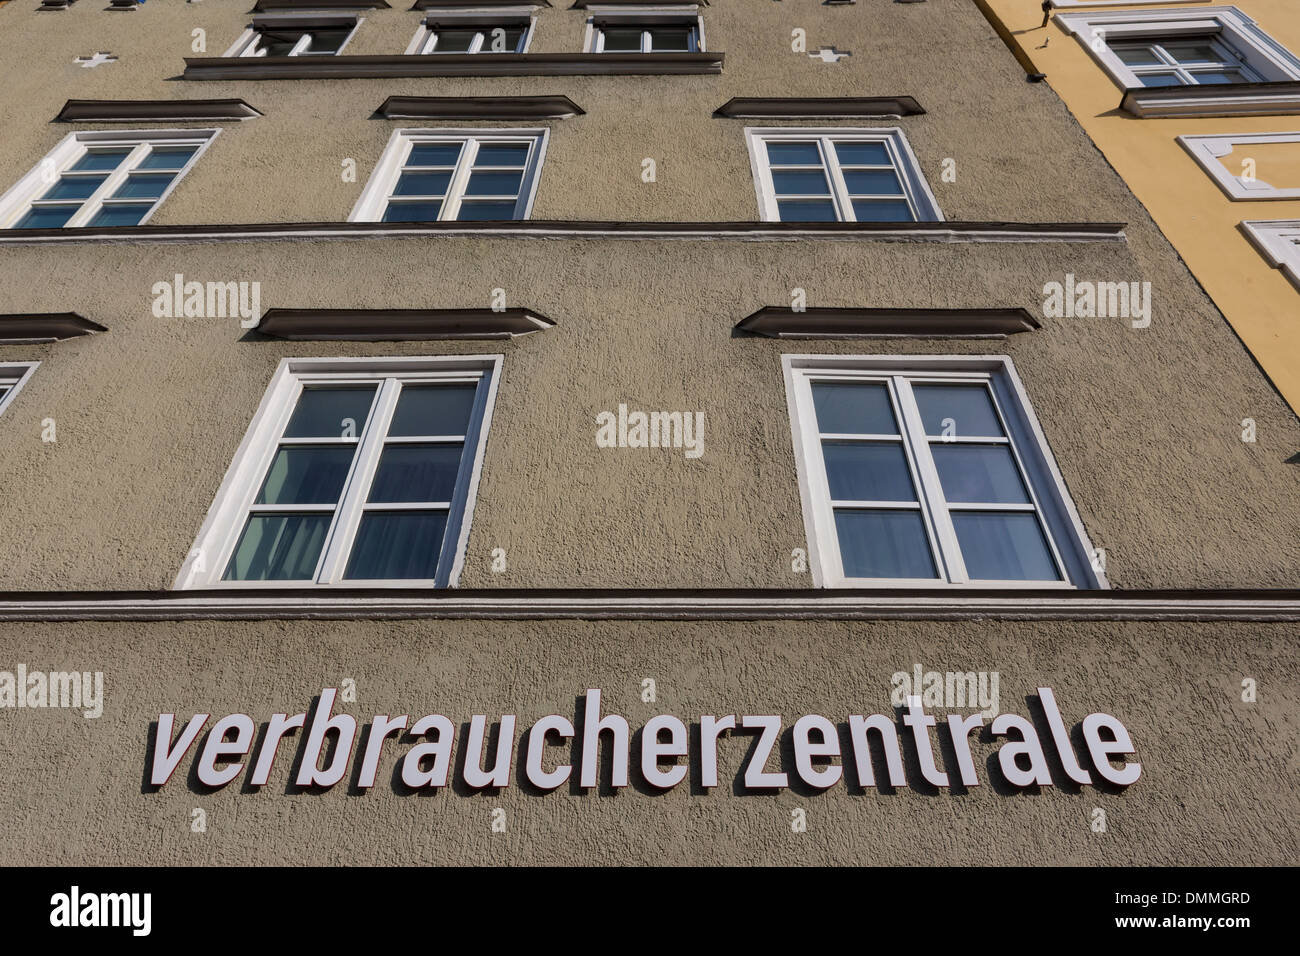 Alemania, Baviera, Landshut, centro de asesoramiento del consumidor Foto de stock